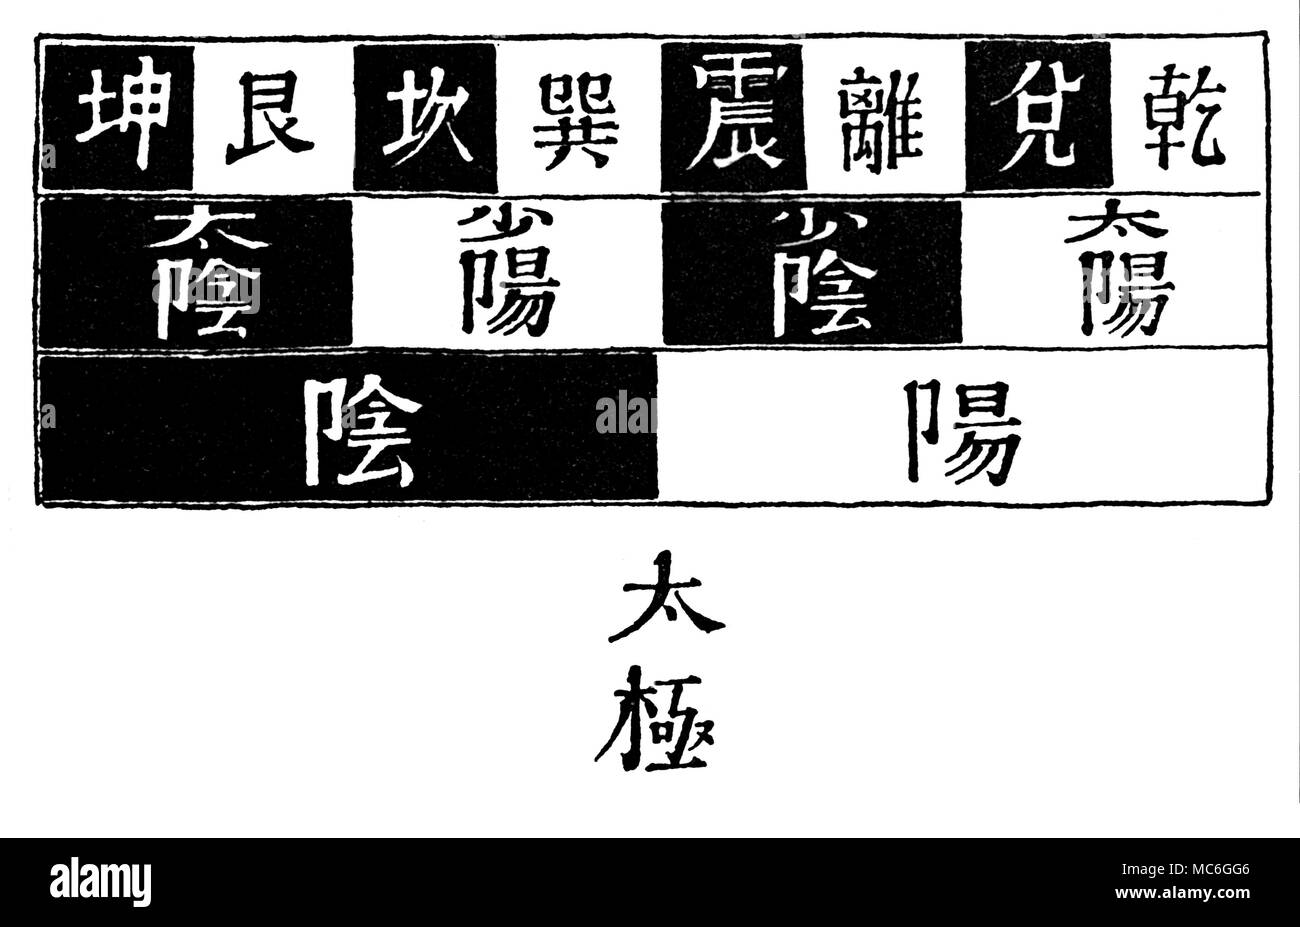 I CHING - Schéma de trigrammes de l'évolution de l'trigrammes du Livre des mutations ou Yi King, à partir de la dualité linguistique du Yin et du yang. Le diagramme est à lire de bas en haut, et translittérer comme suit : Kun Ken K'un soleil Chen Li Tui Chien Grand Ying Yang Petit Petit Grand Ying Yang Ying Yang [T'ai Kih : Ultime suprême] Le diagramme est standard dans tous les bons ouvrages chinois sur la th Banque D'Images